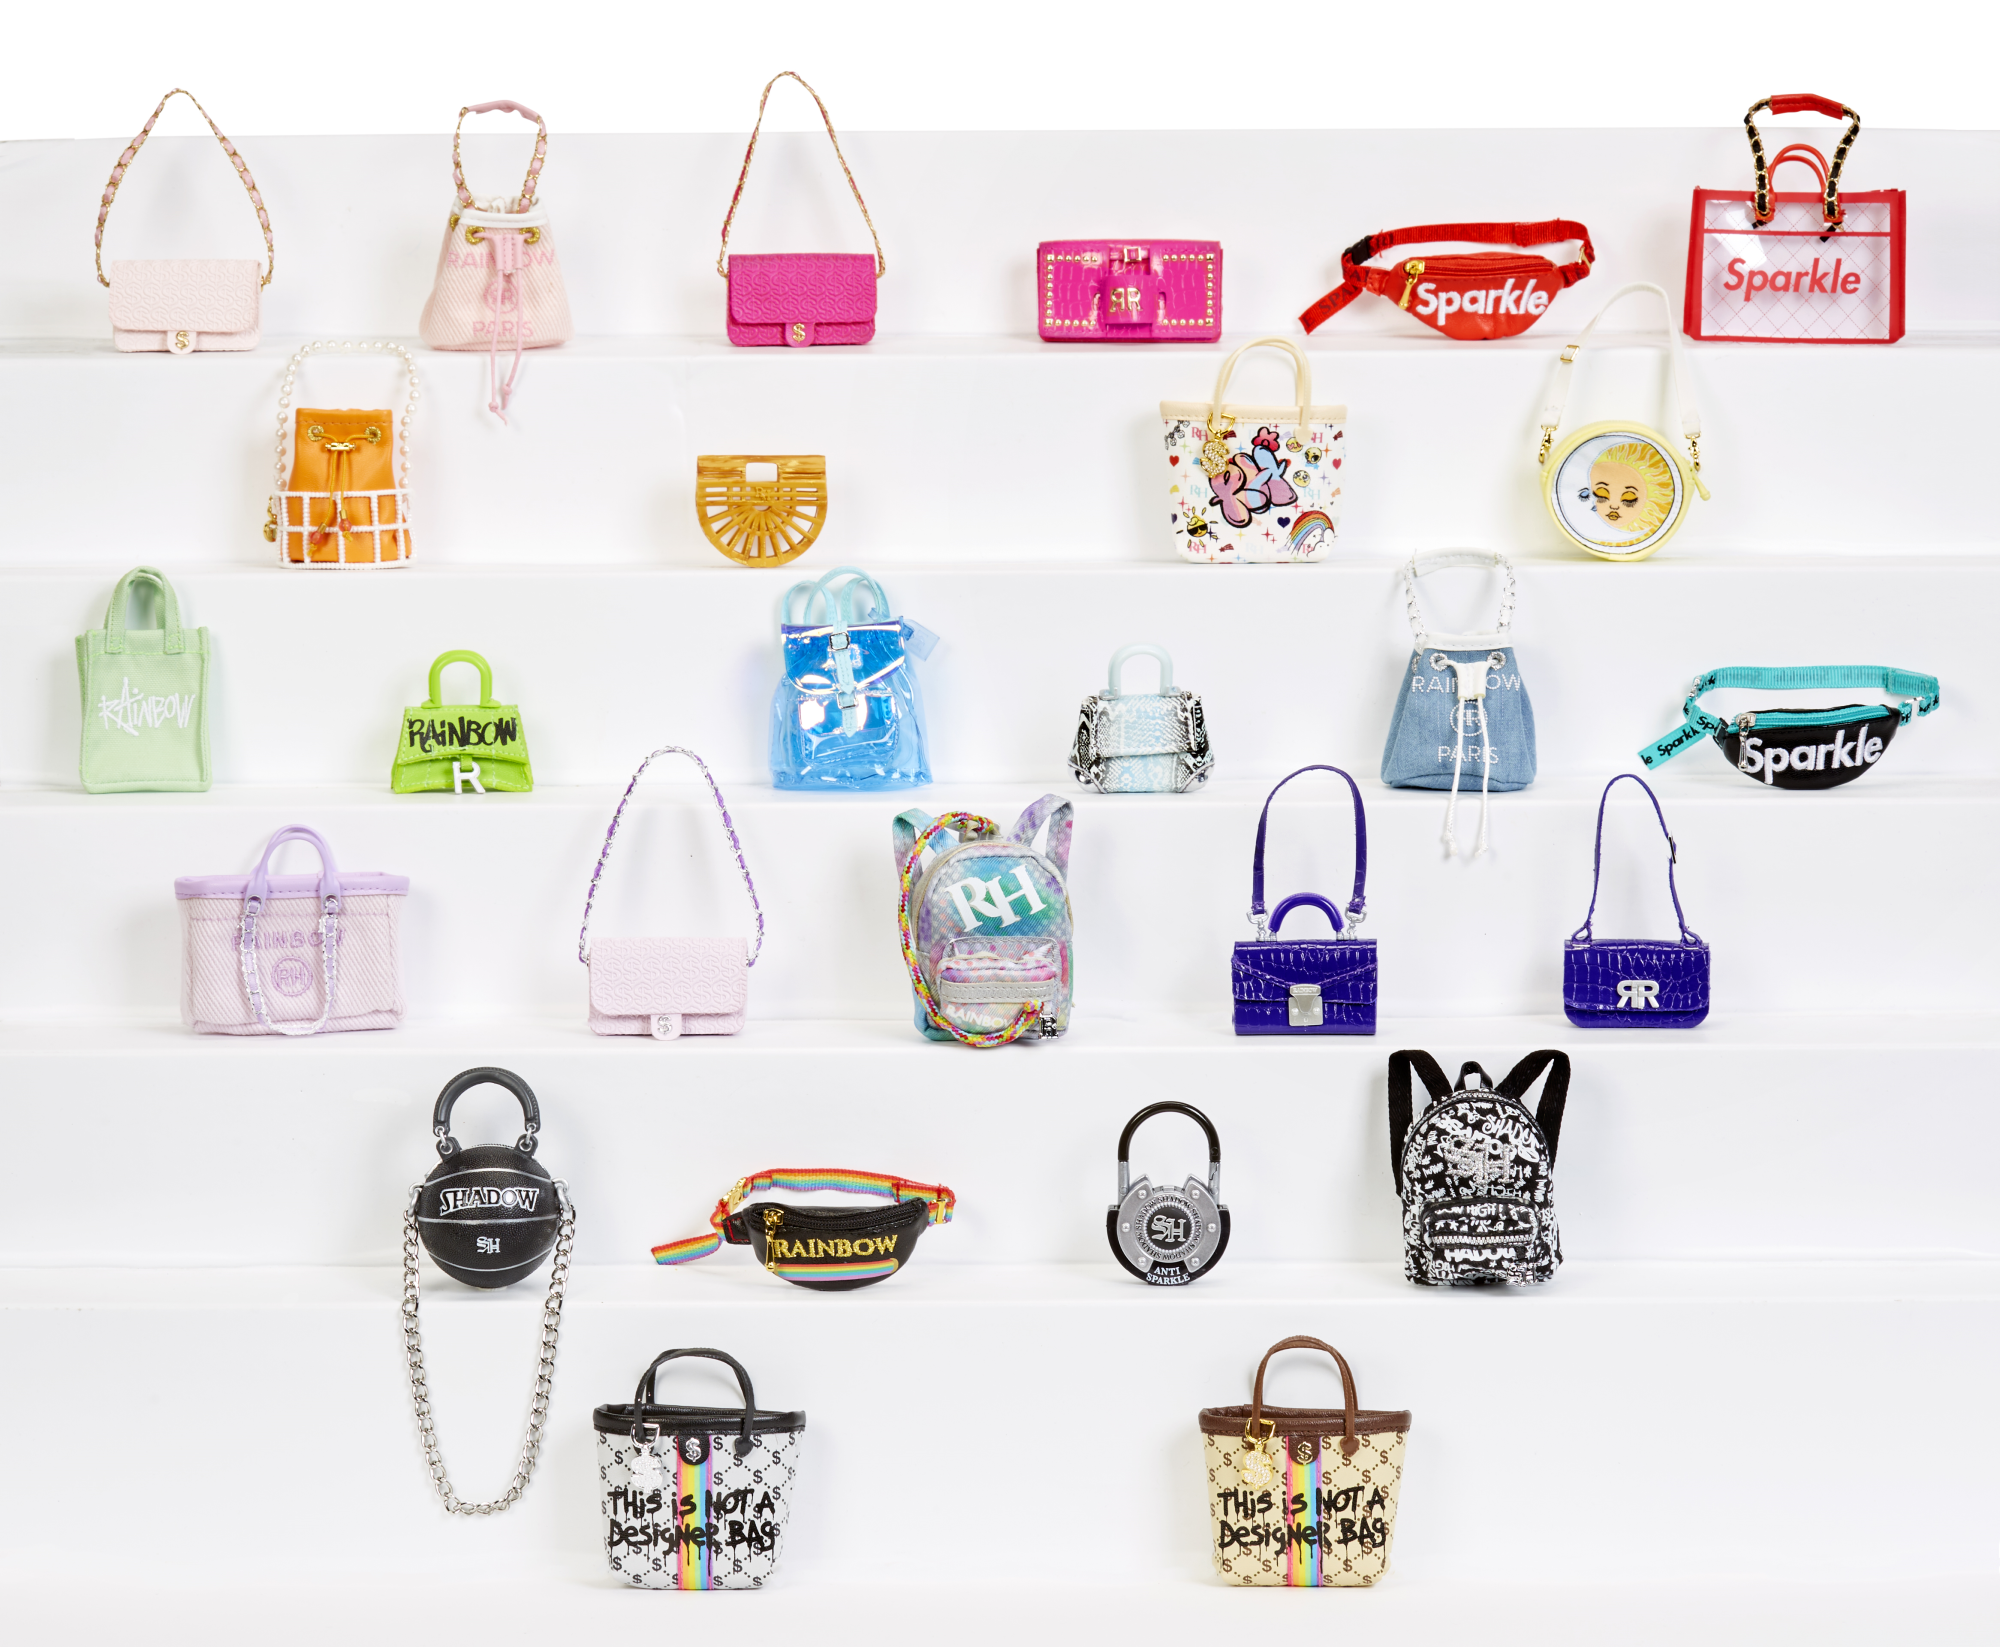 Rainbow high accessories mini borse da studio - 27 borse collezionabili - contiene 1 accessorio di alta gamma - Rainbow High